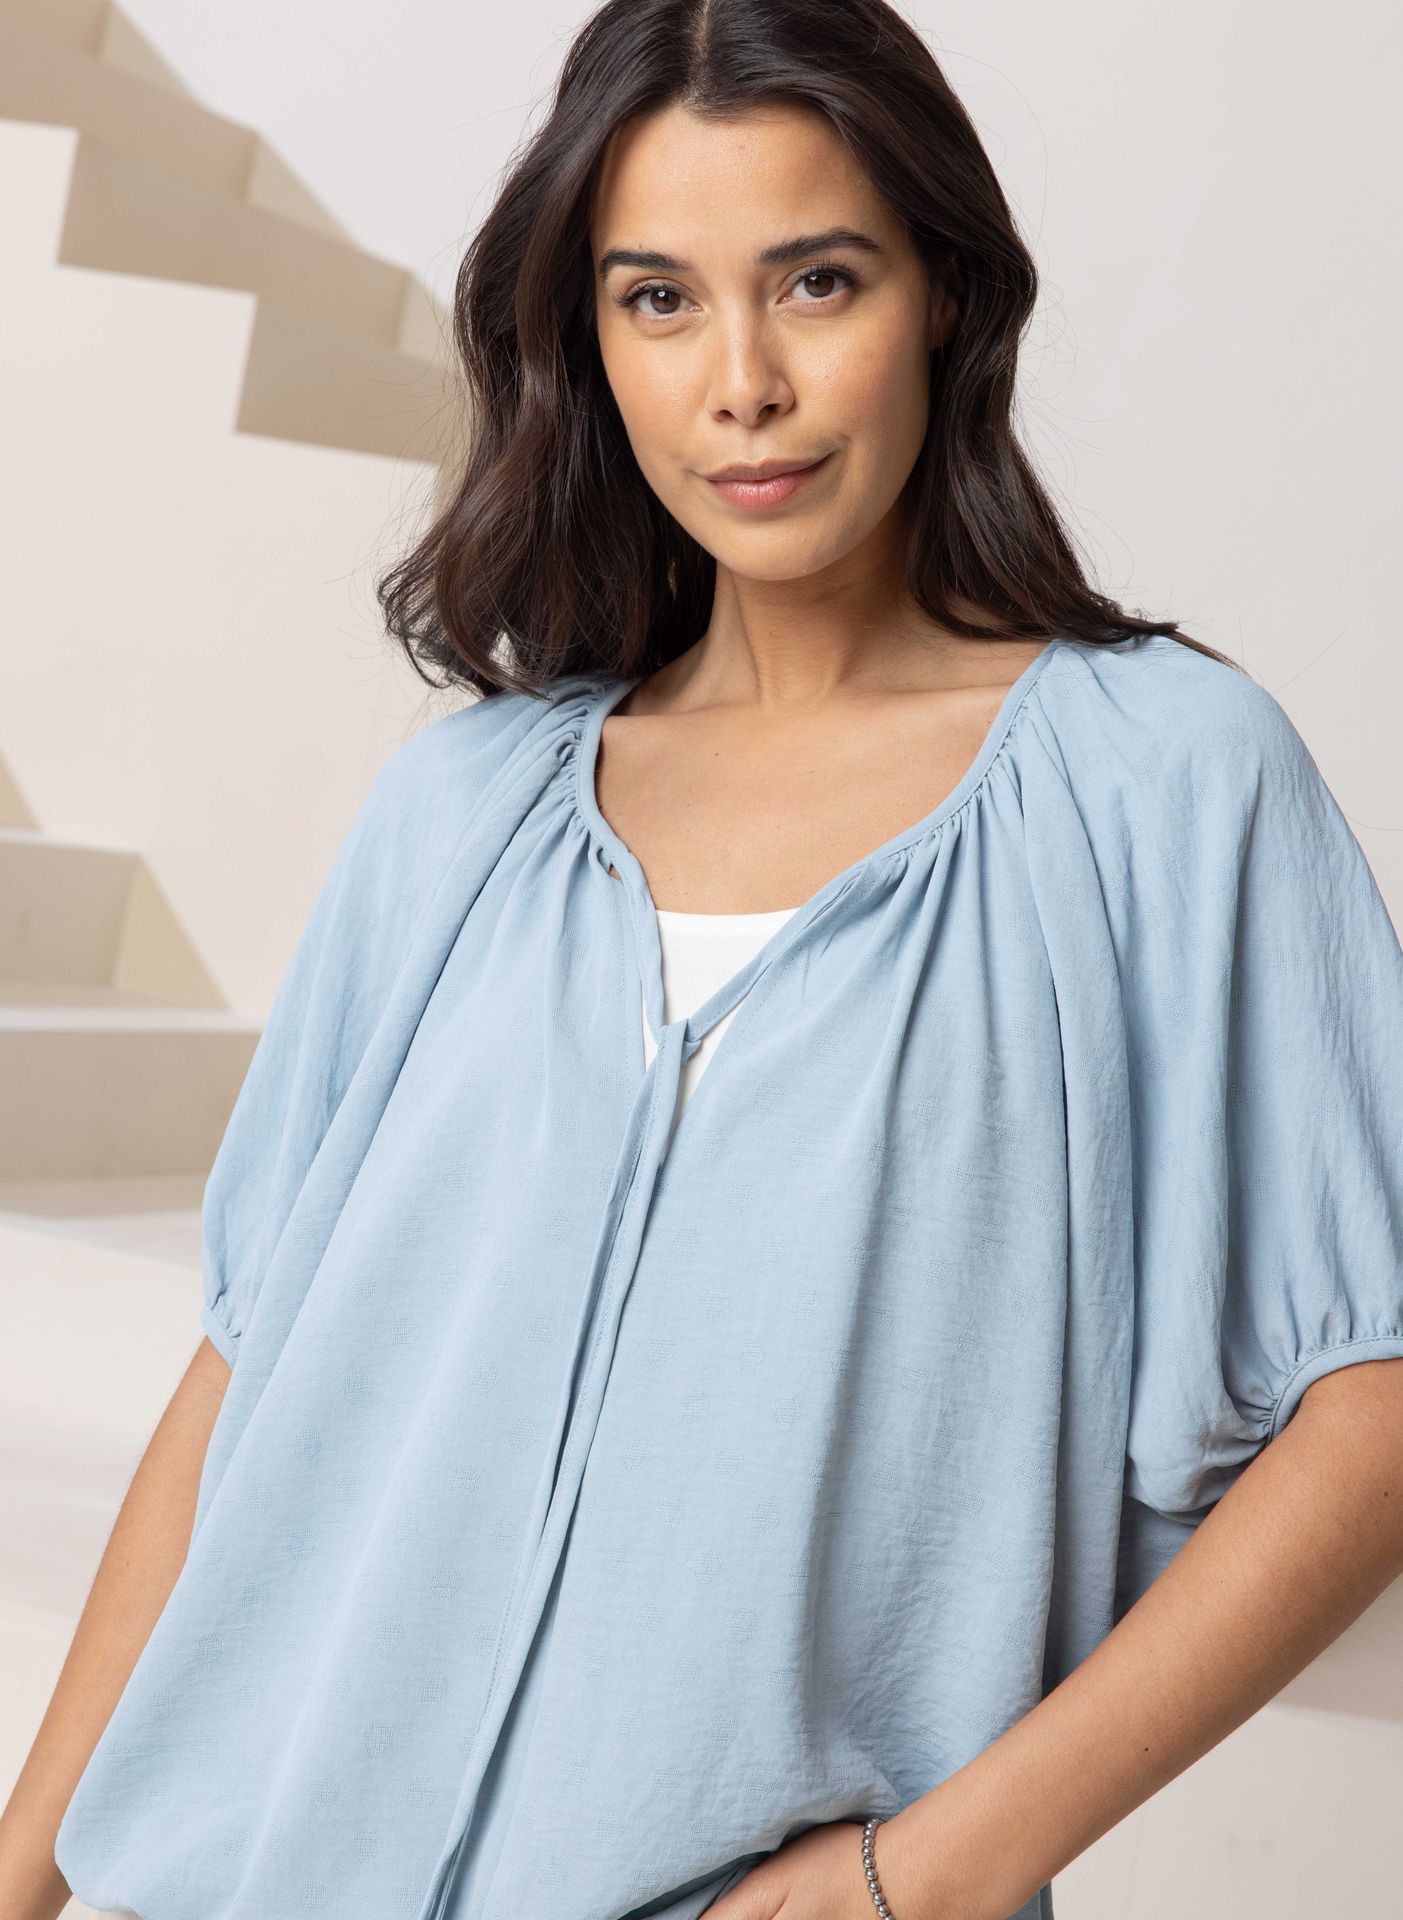 Norah Blauwe blouse met koordjes denim blue 213707-472